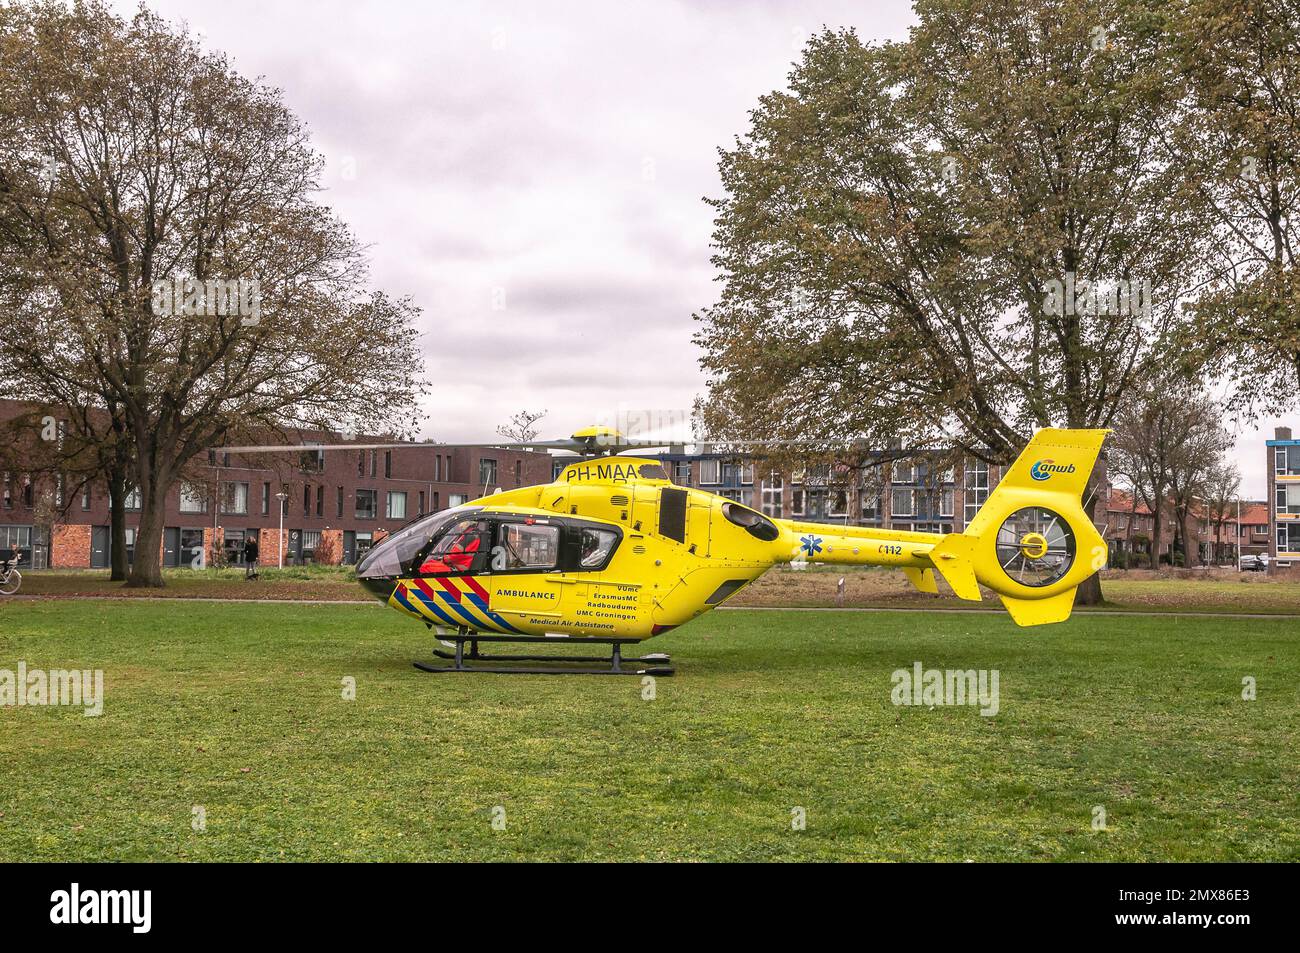 Un hélicoptère de traumatologie ANWB hollandais a atterri sur un terrain d'herbe Banque D'Images